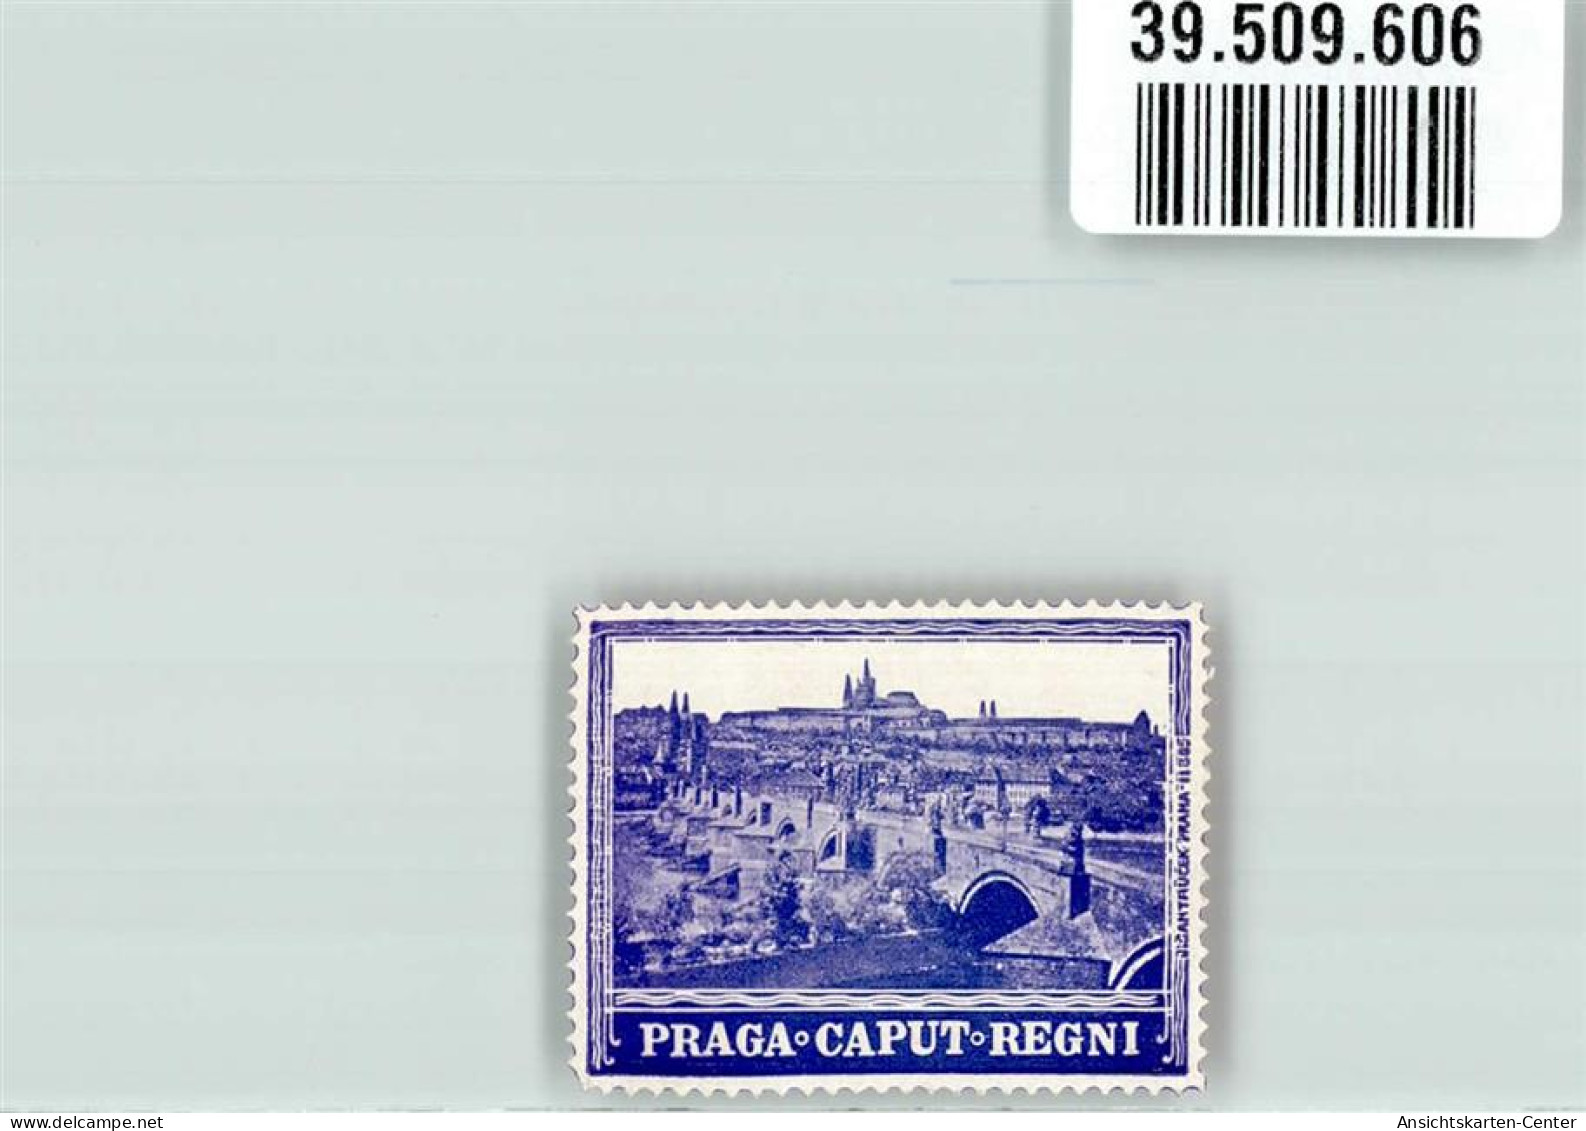 39509606 - Prag   Praha - Tschechische Republik